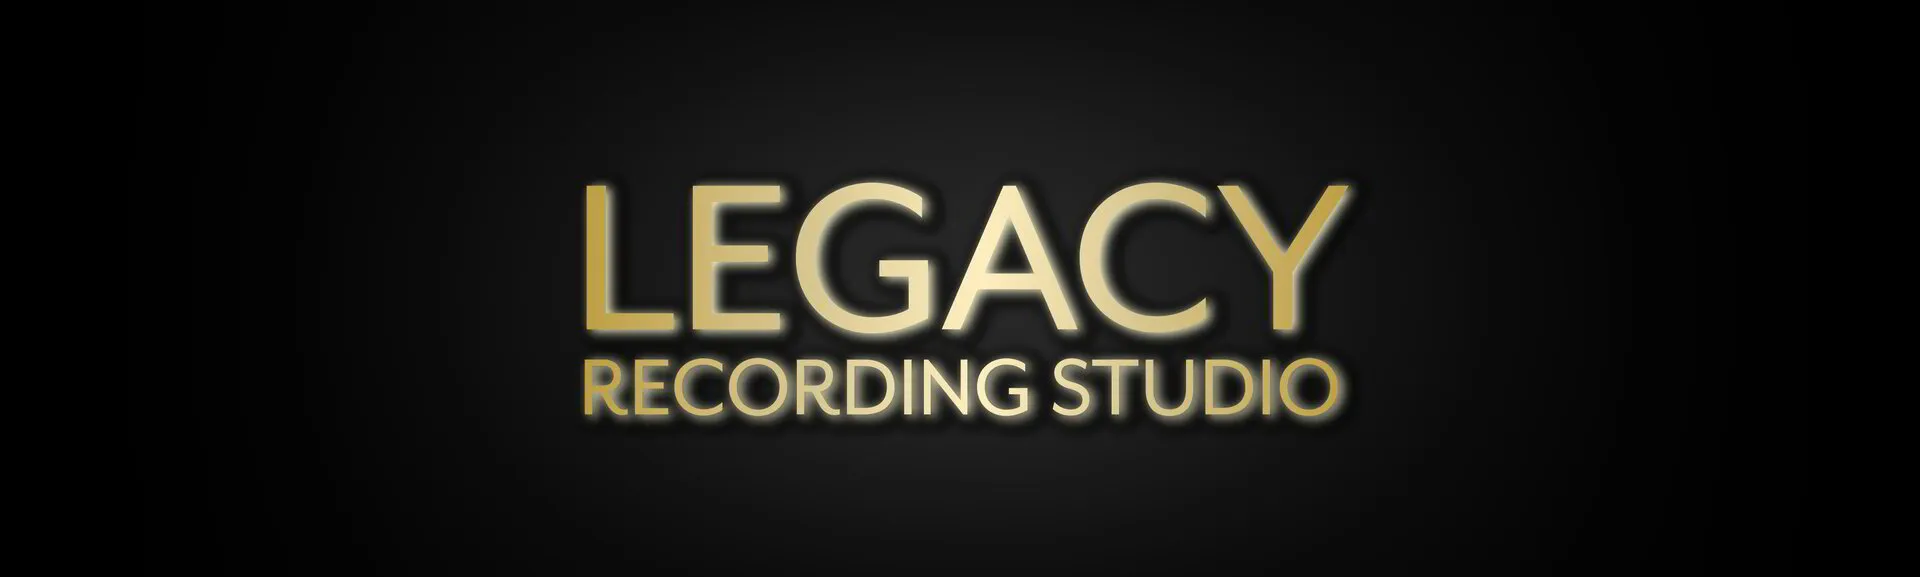 Legacy Recording Studio